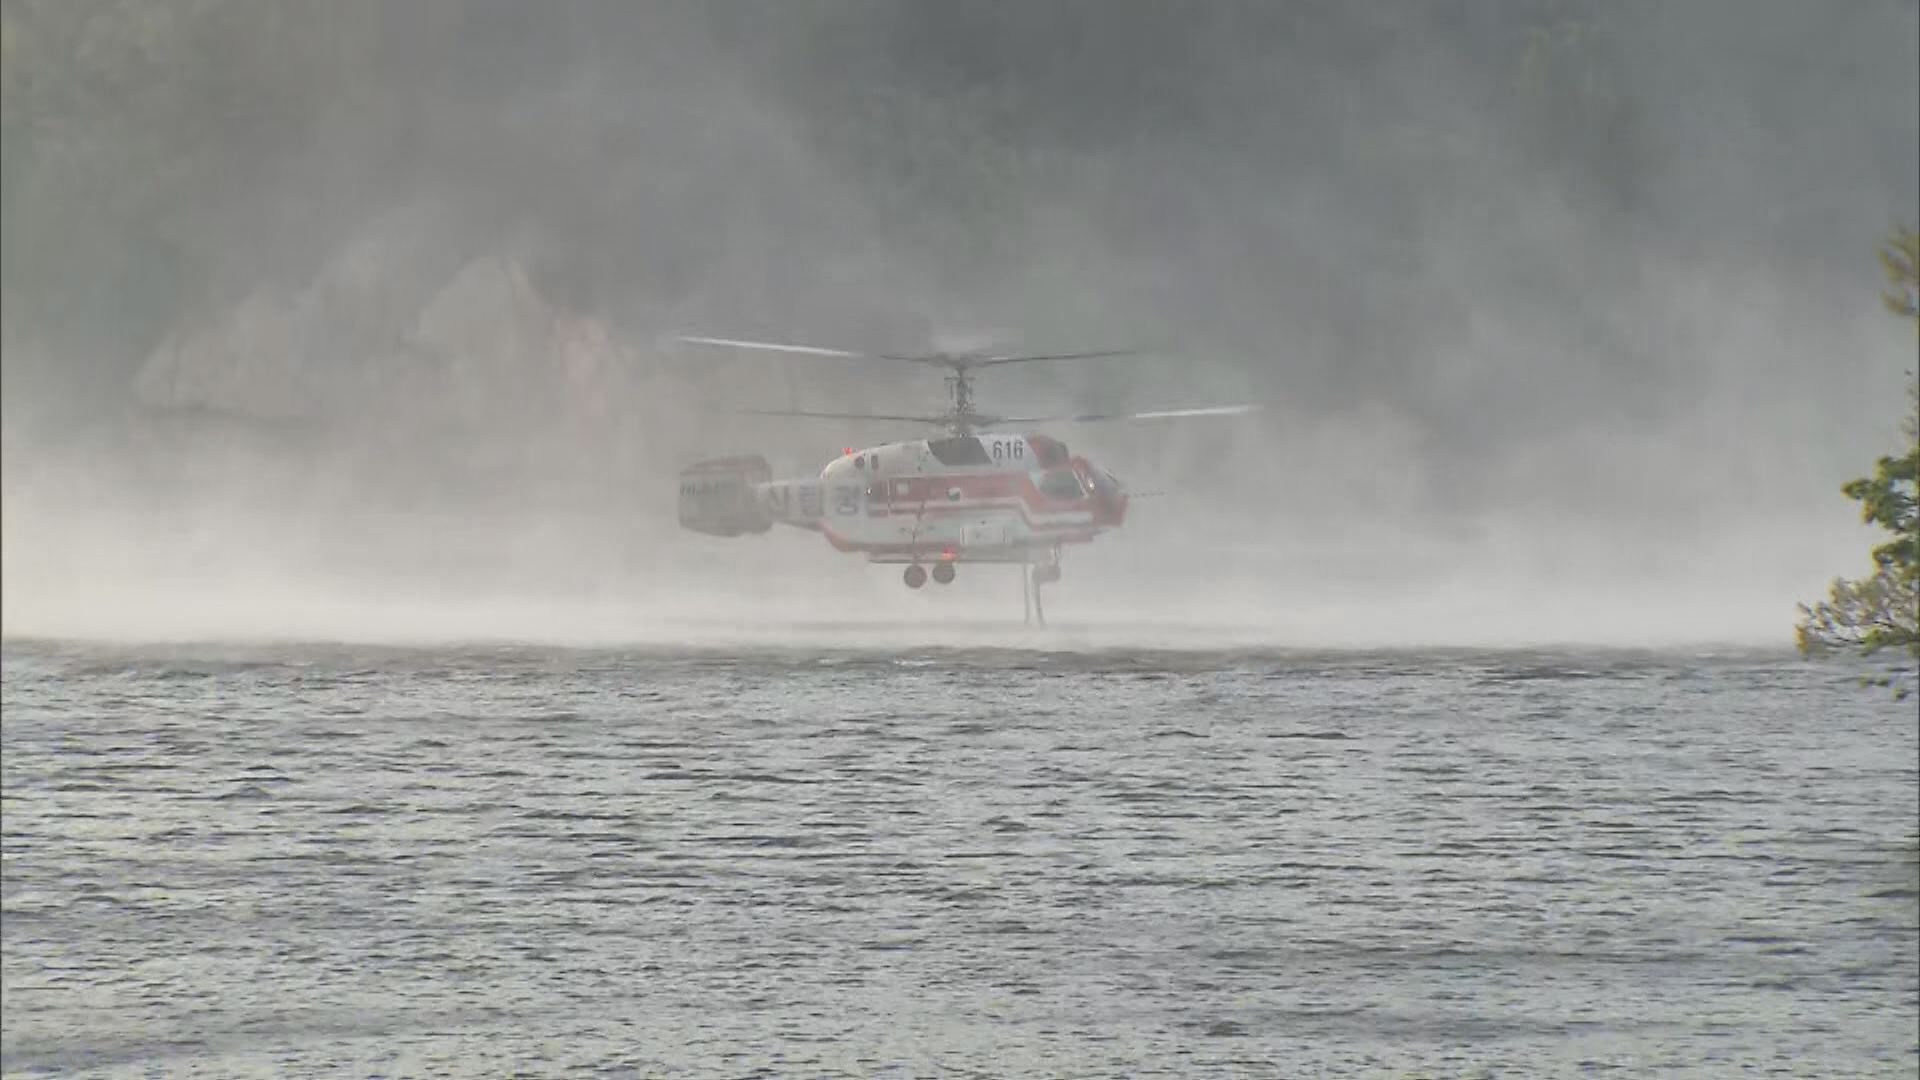  산림청 헬기가 산불 진화용 물을 싣는 ‘담수 작업’ 모습. 프로펠러의 바람 때문에 강한 물보라가 일고 있다. 